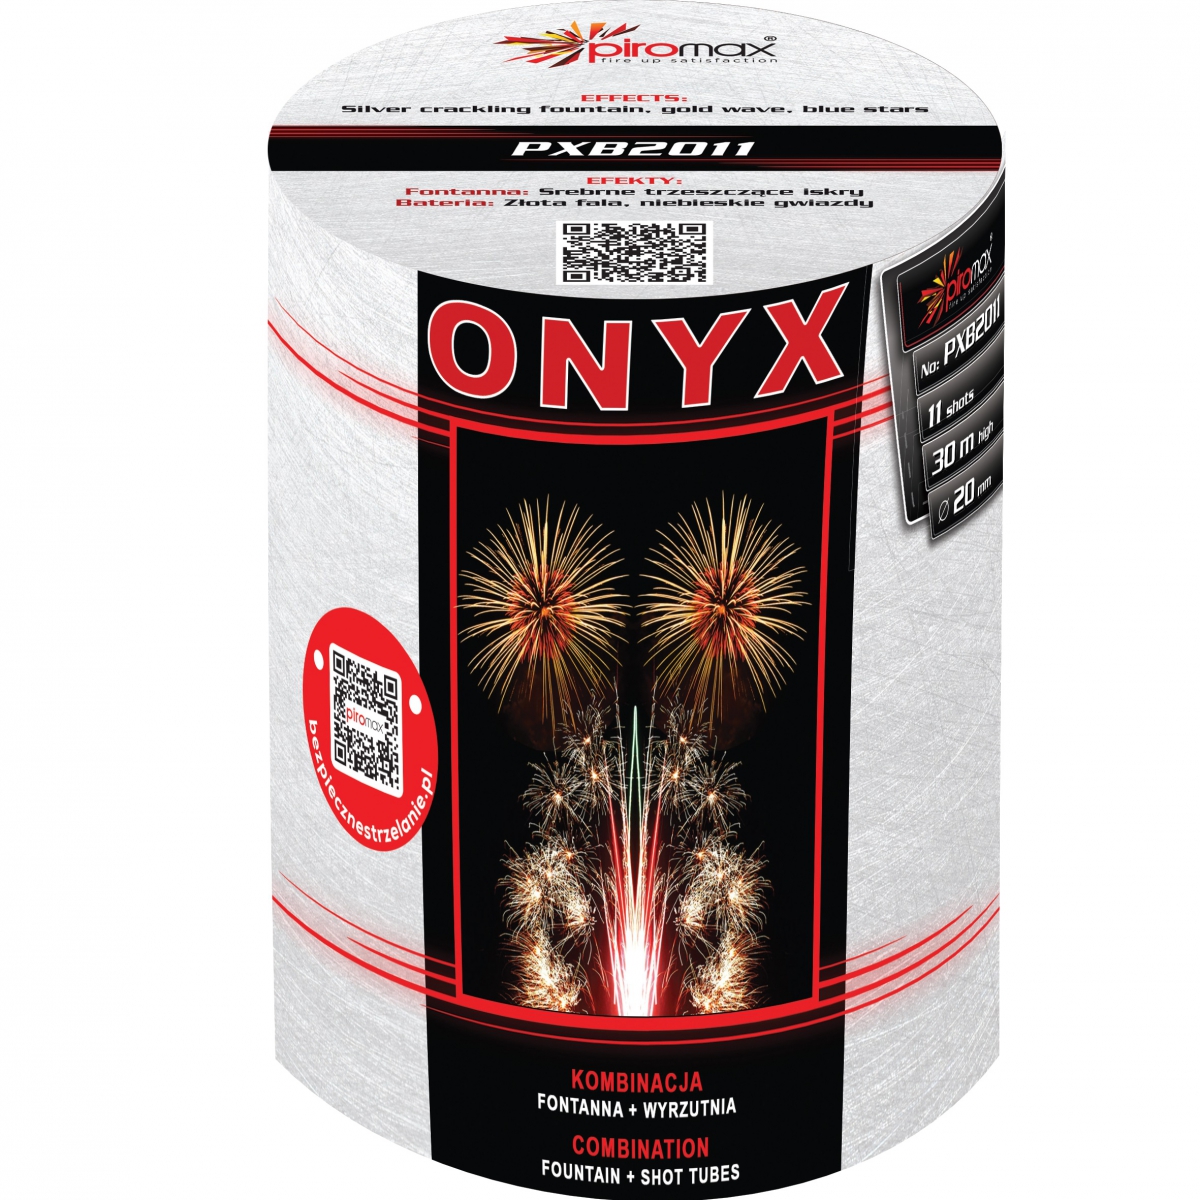 PXB2011 Onyx